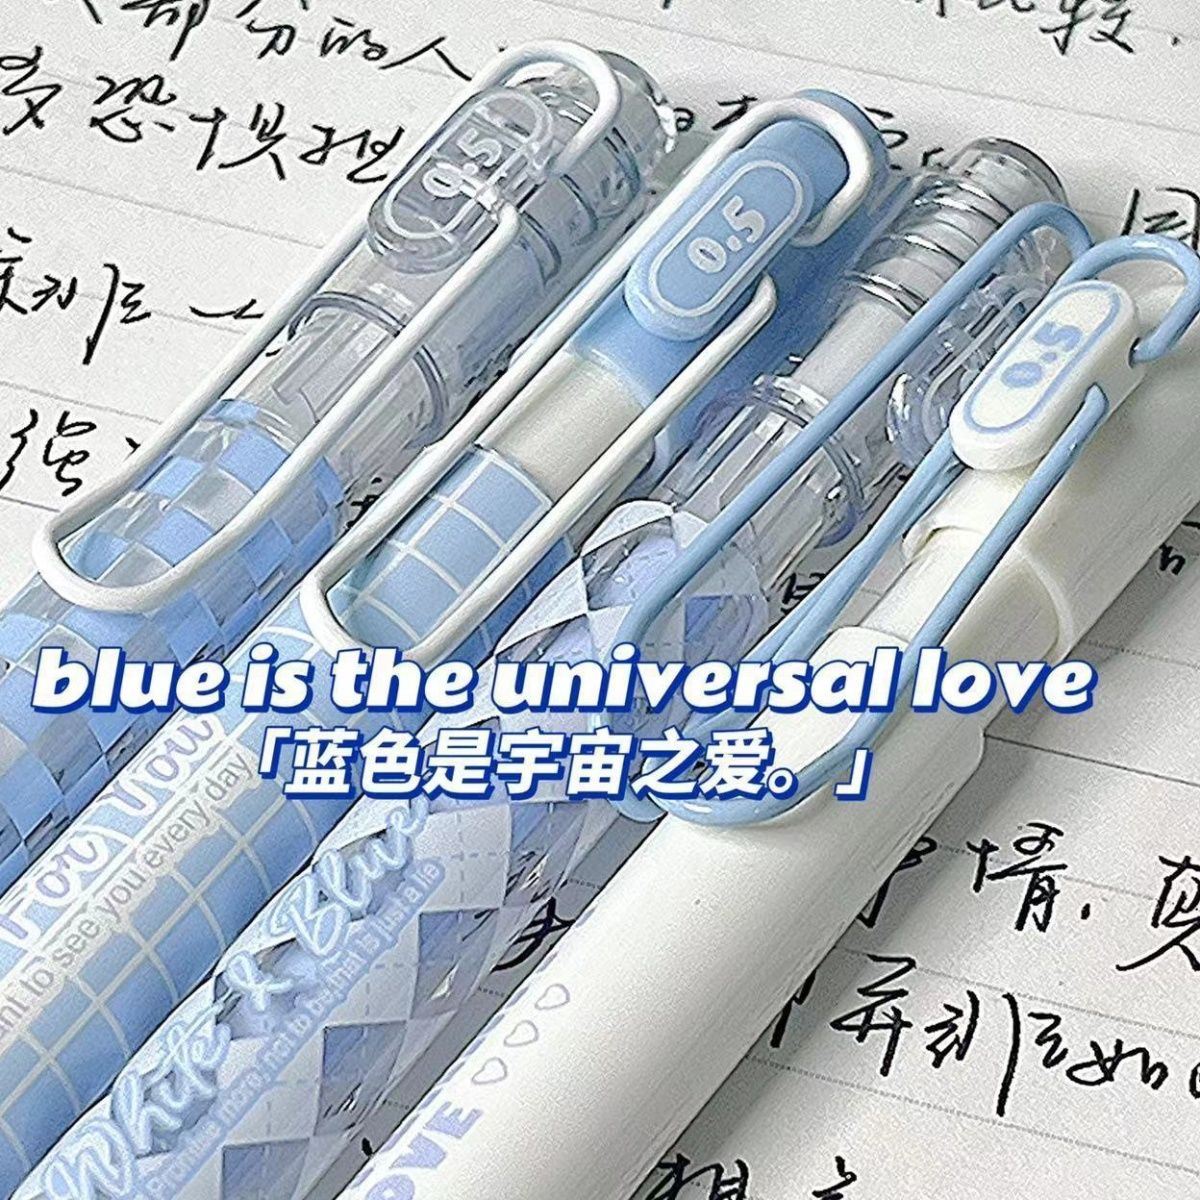 慕乐蓝白cp按动笔ins韩系风高颜值学生小众中性笔好看的速干顺滑超长书写st头中性笔0.5mm水笔专用黑色刷题笔